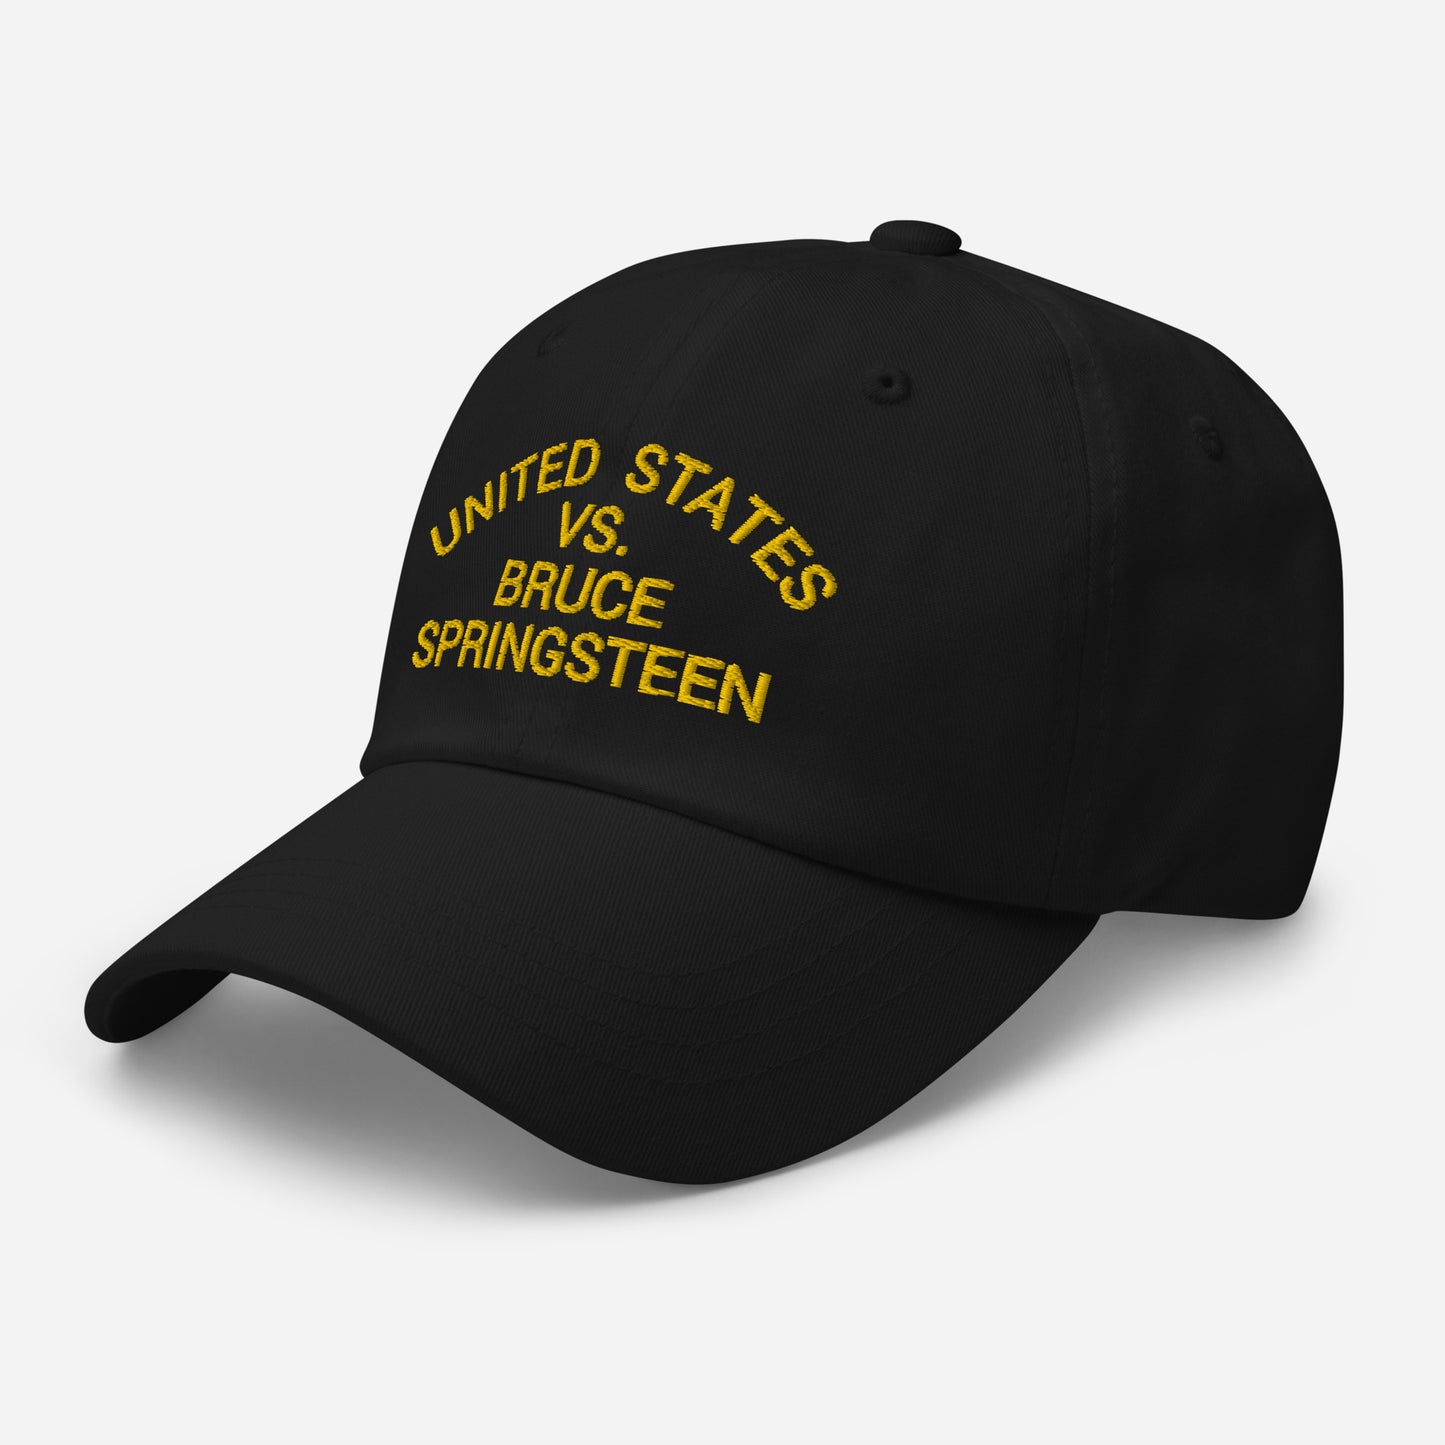 United States VS Bruce Springsteen Hat / Bruce Springsteen Dad Hat